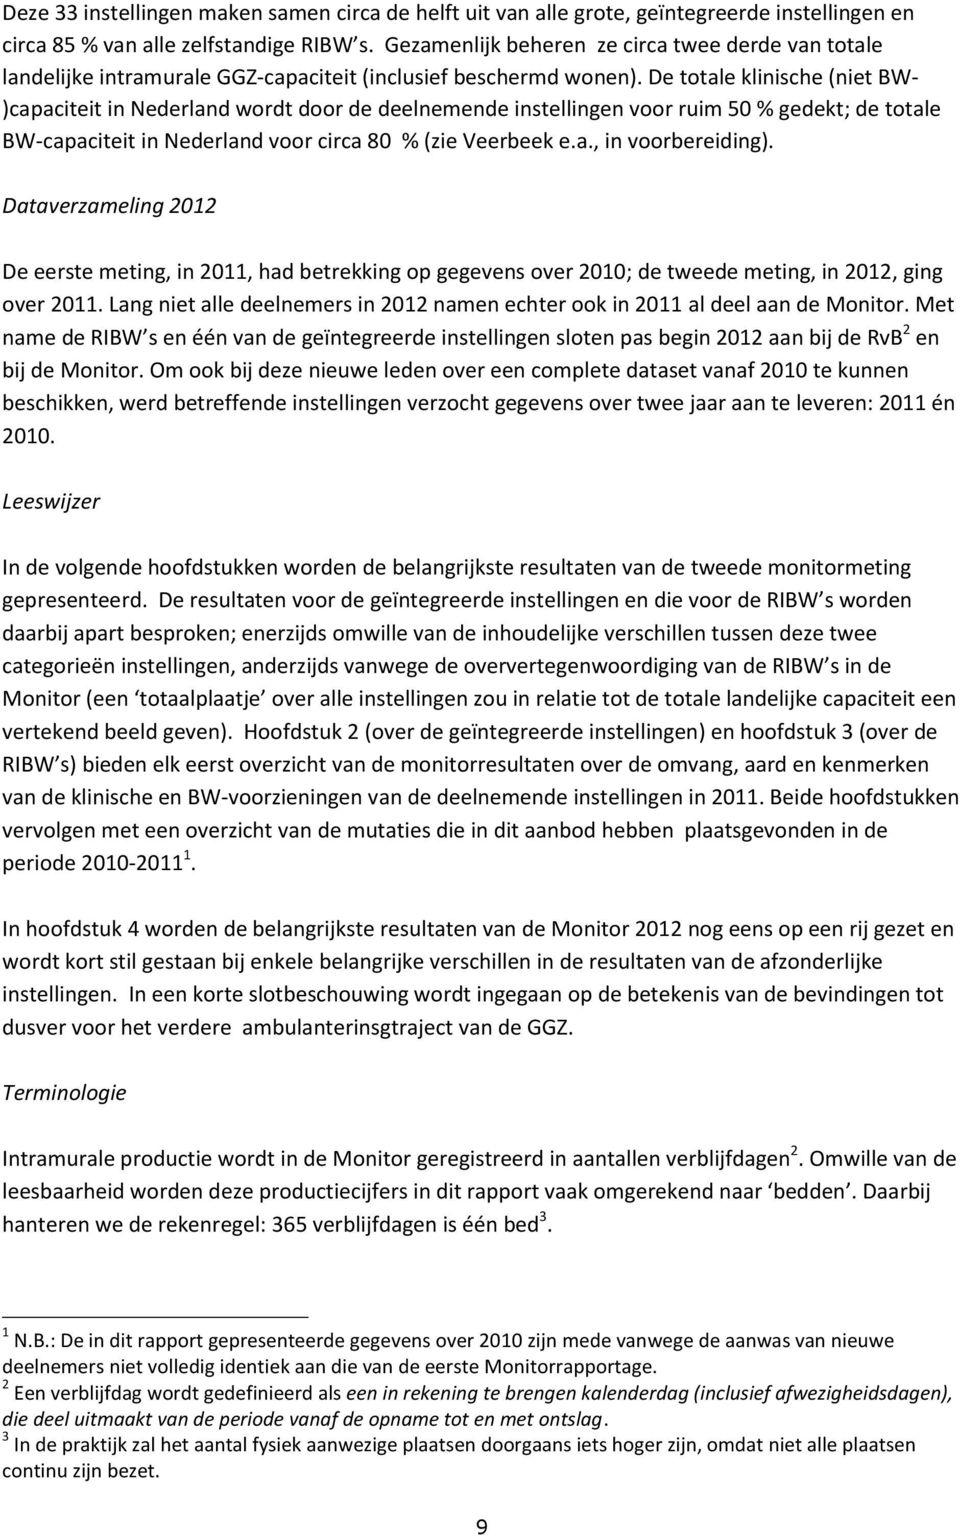 De totale klinische (niet BW- )capaciteit in Nederland wordt door de deelnemende instellingen voor ruim 50 % gedekt; de totale BW-capaciteit in Nederland voor circa 80 % (zie Veerbeek e.a., in voorbereiding).